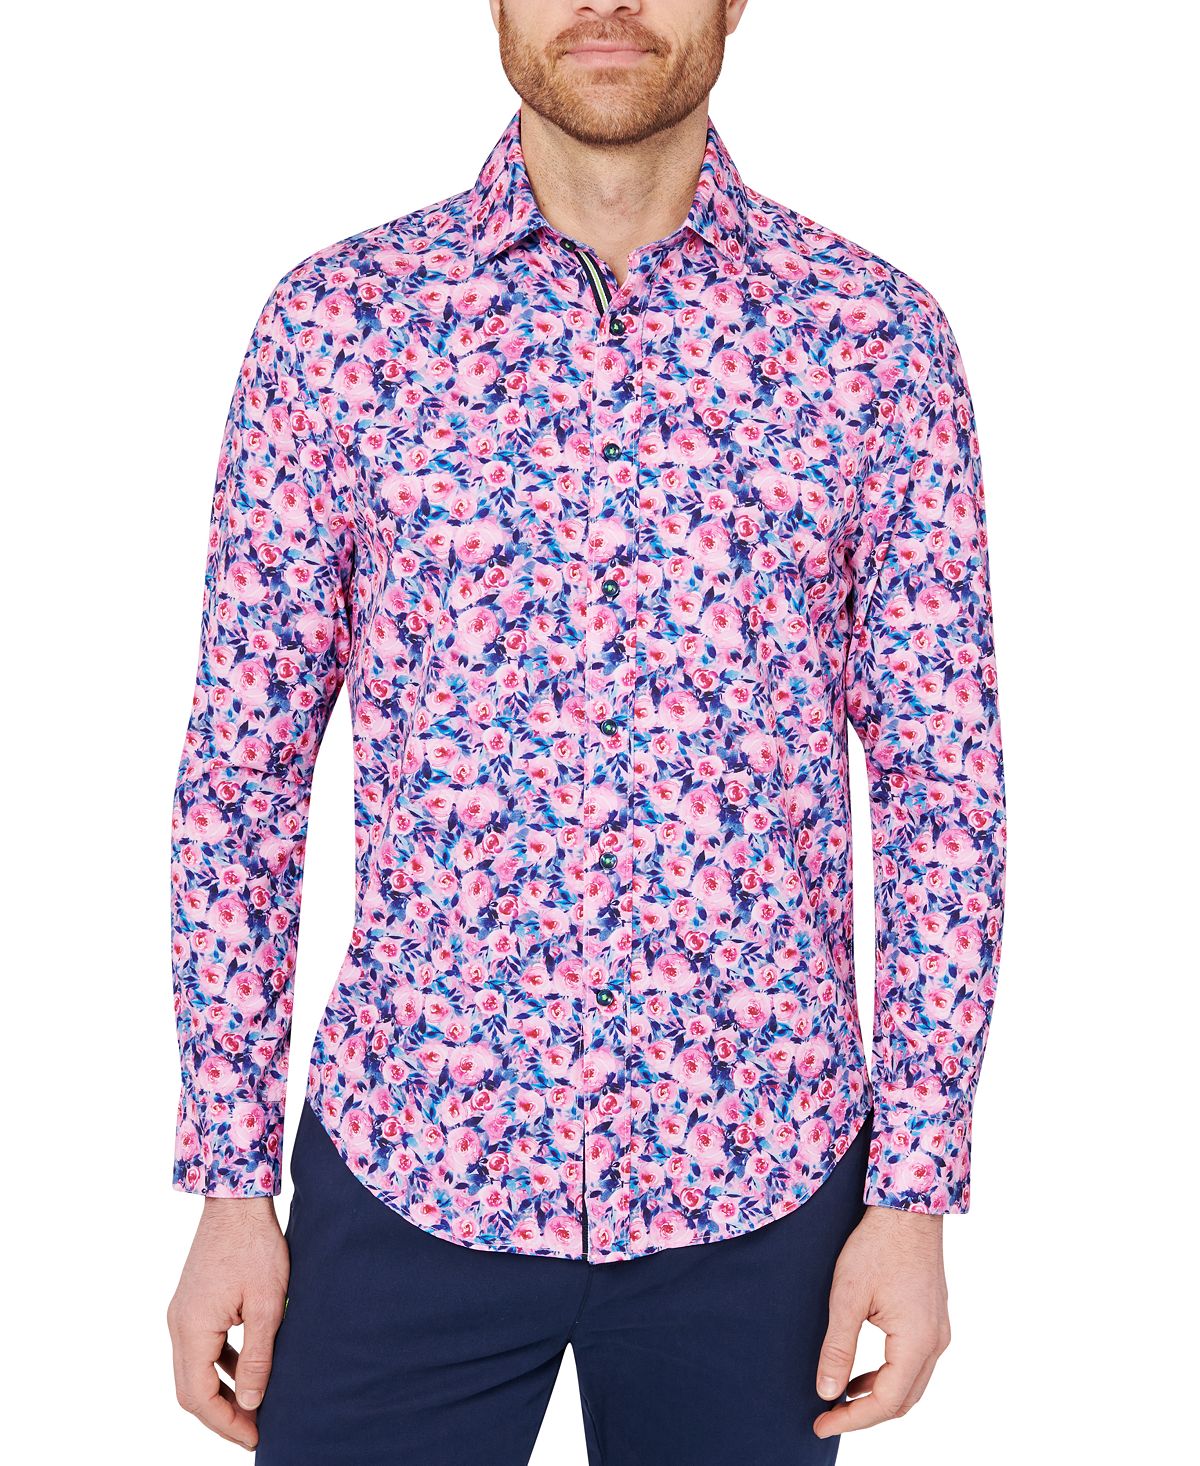 Мужская рубашка узкого кроя розового цвета с цветочным принтом Society of Threads